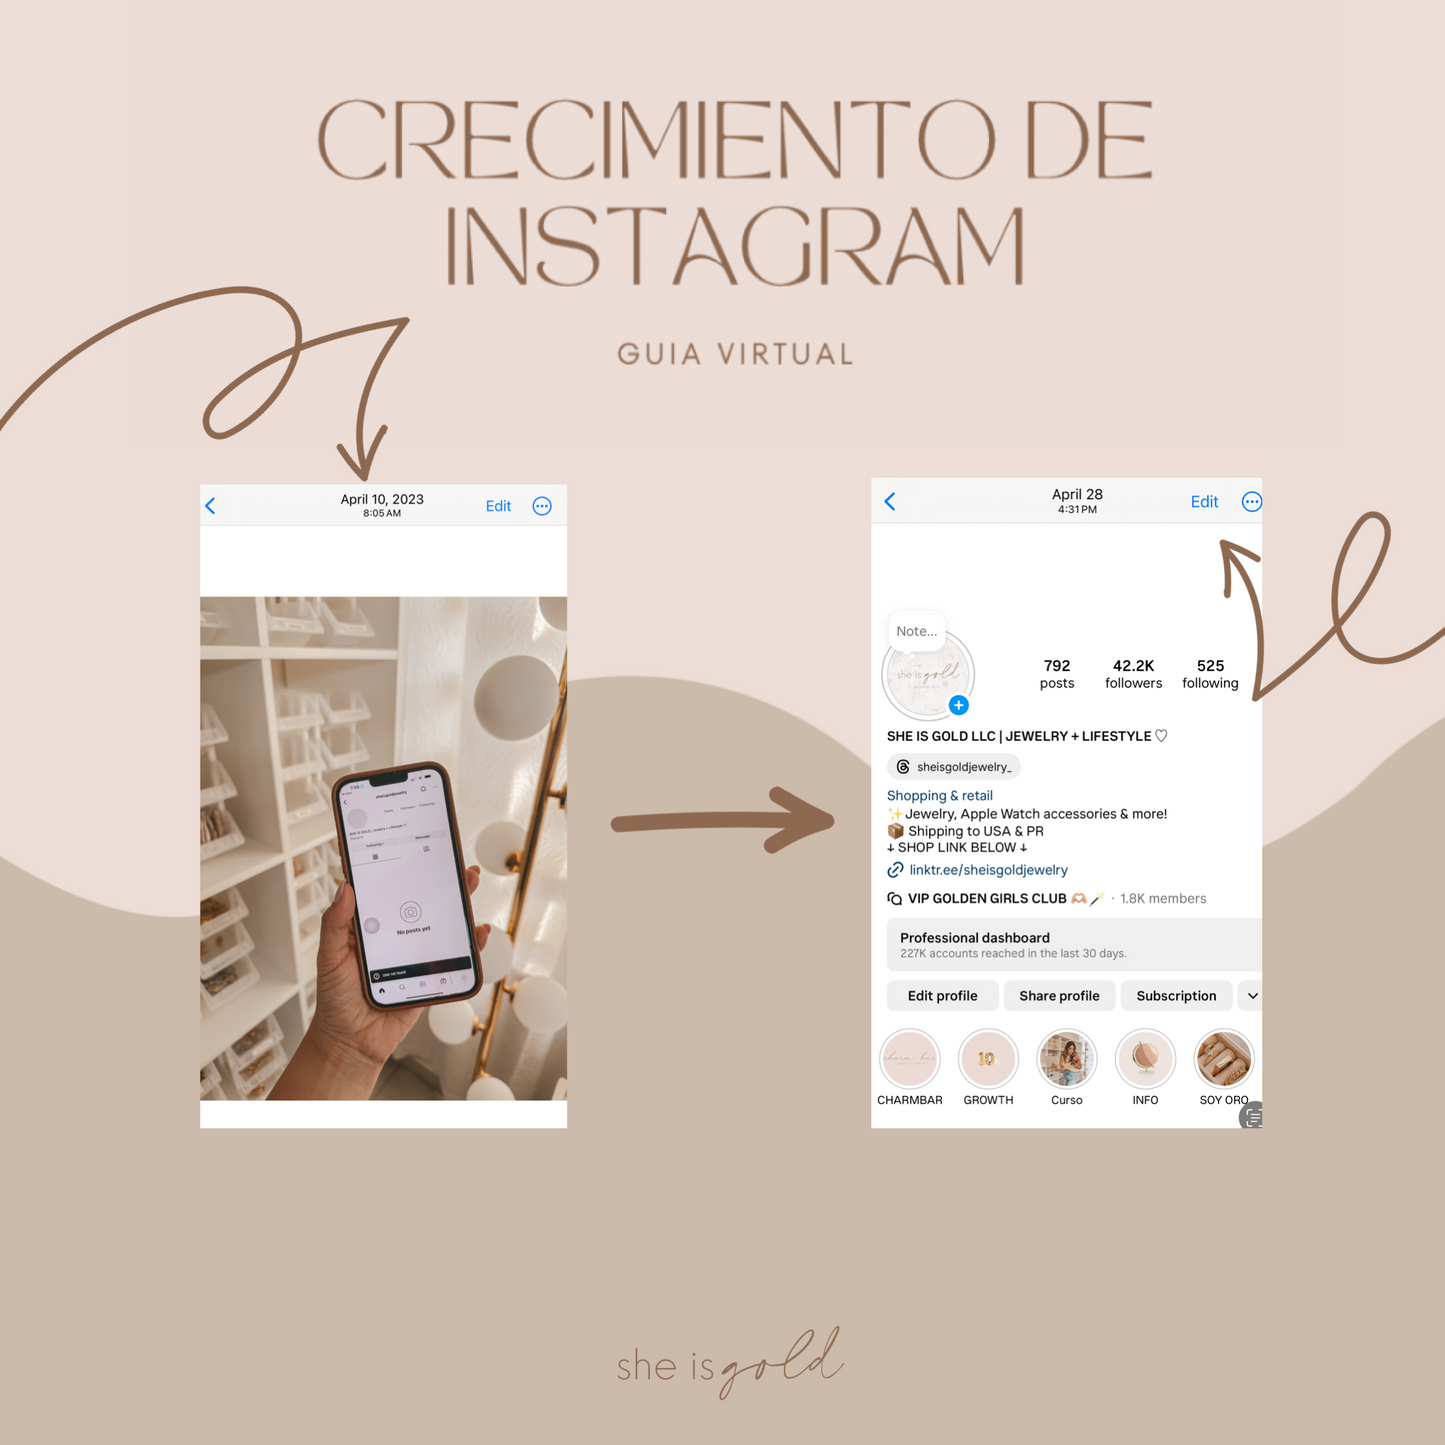 Crecimiento de Instagram - Guía